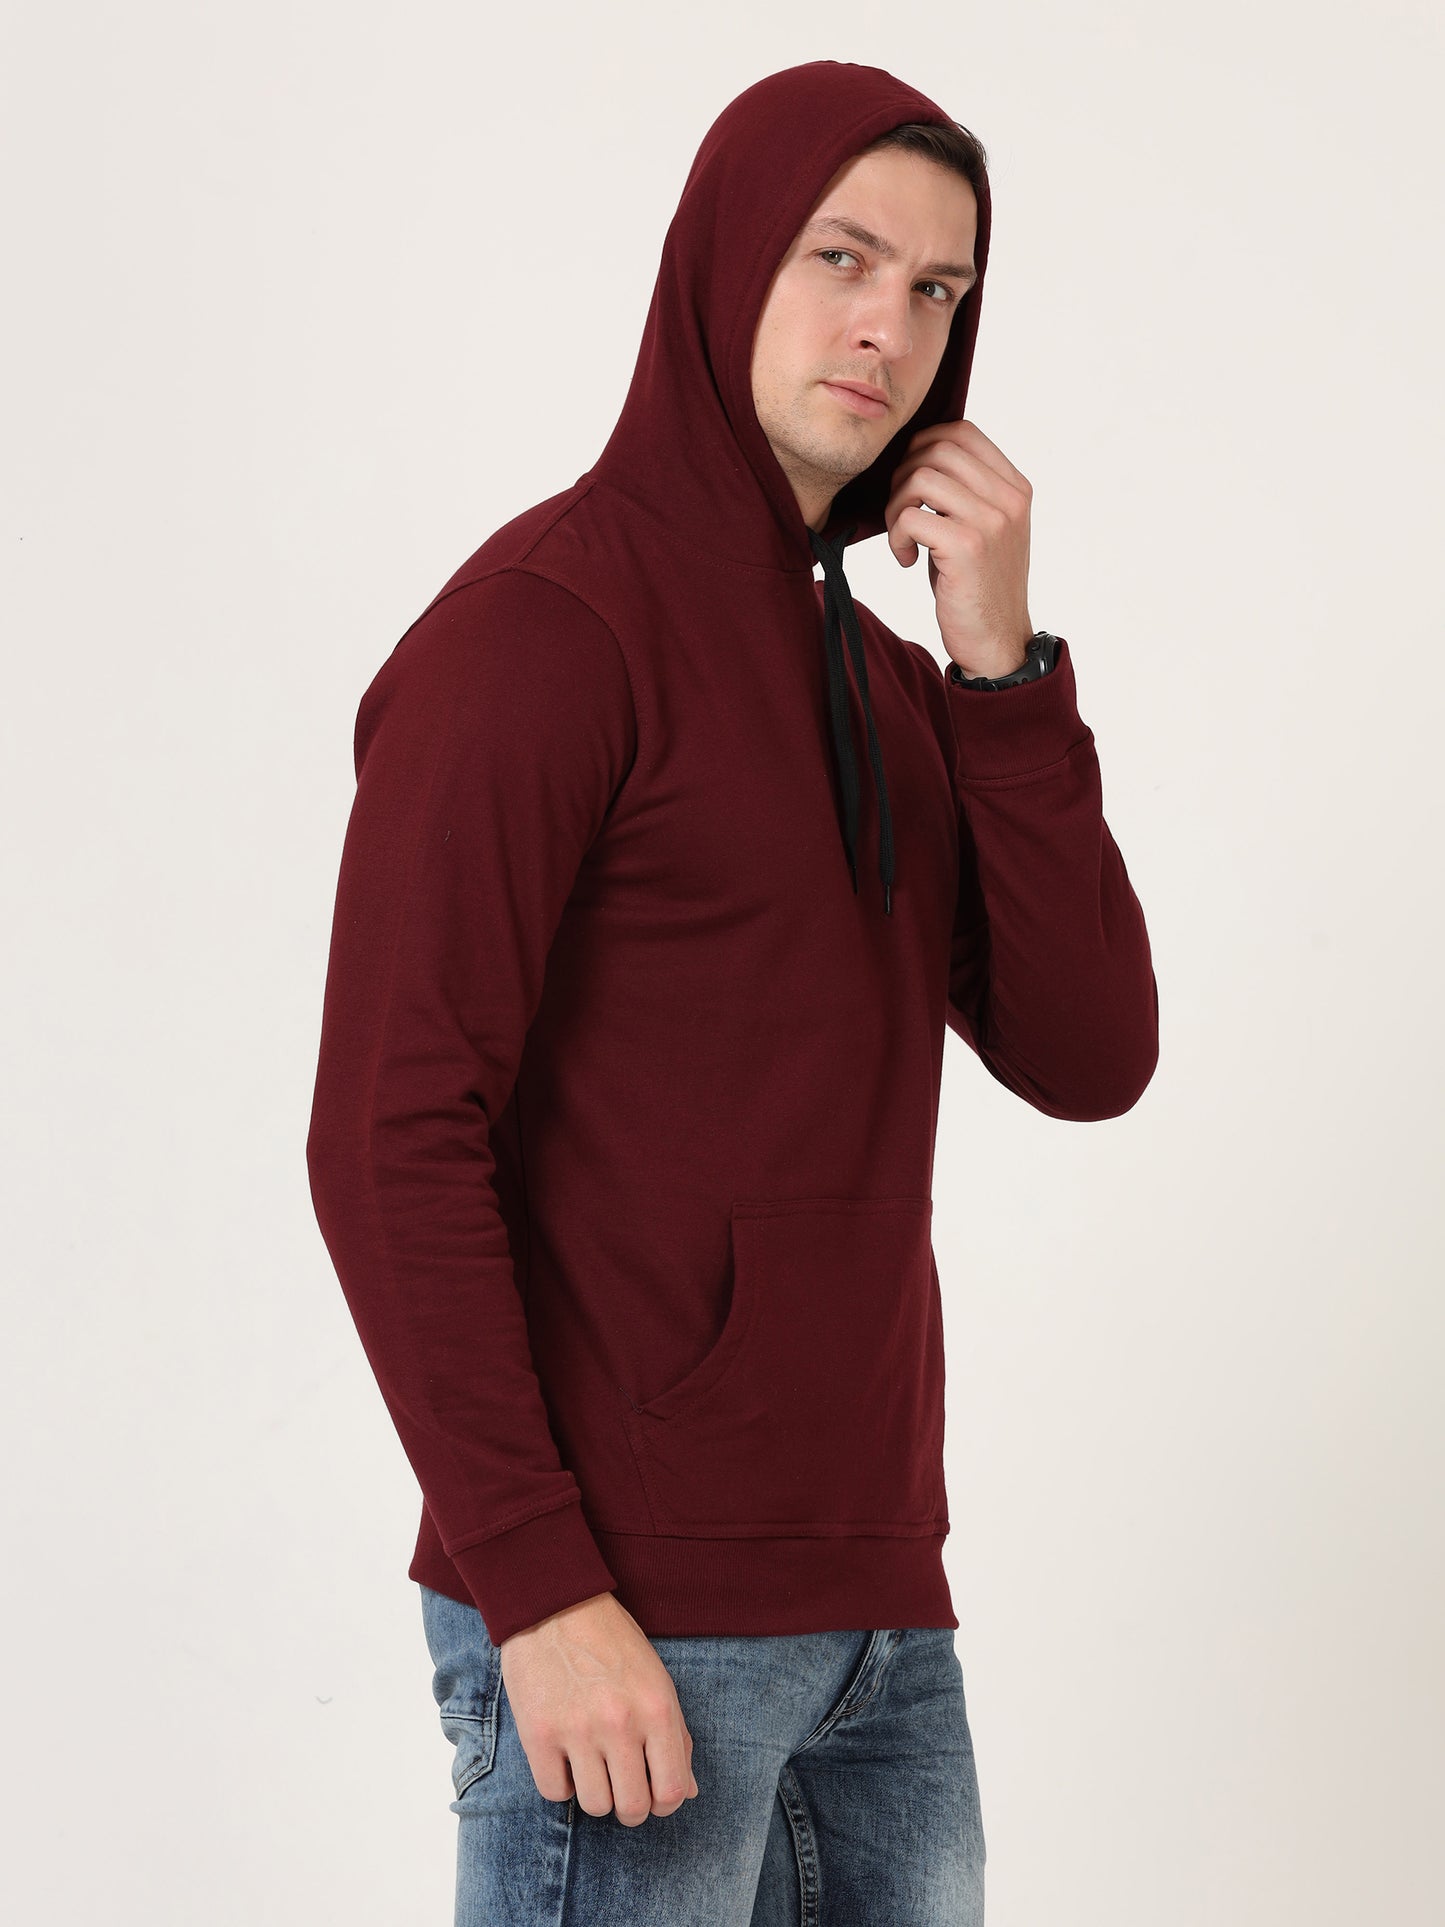 Men's Cotton Hooded Neck Plain Maroon Color Sweatshirt/Hoodies